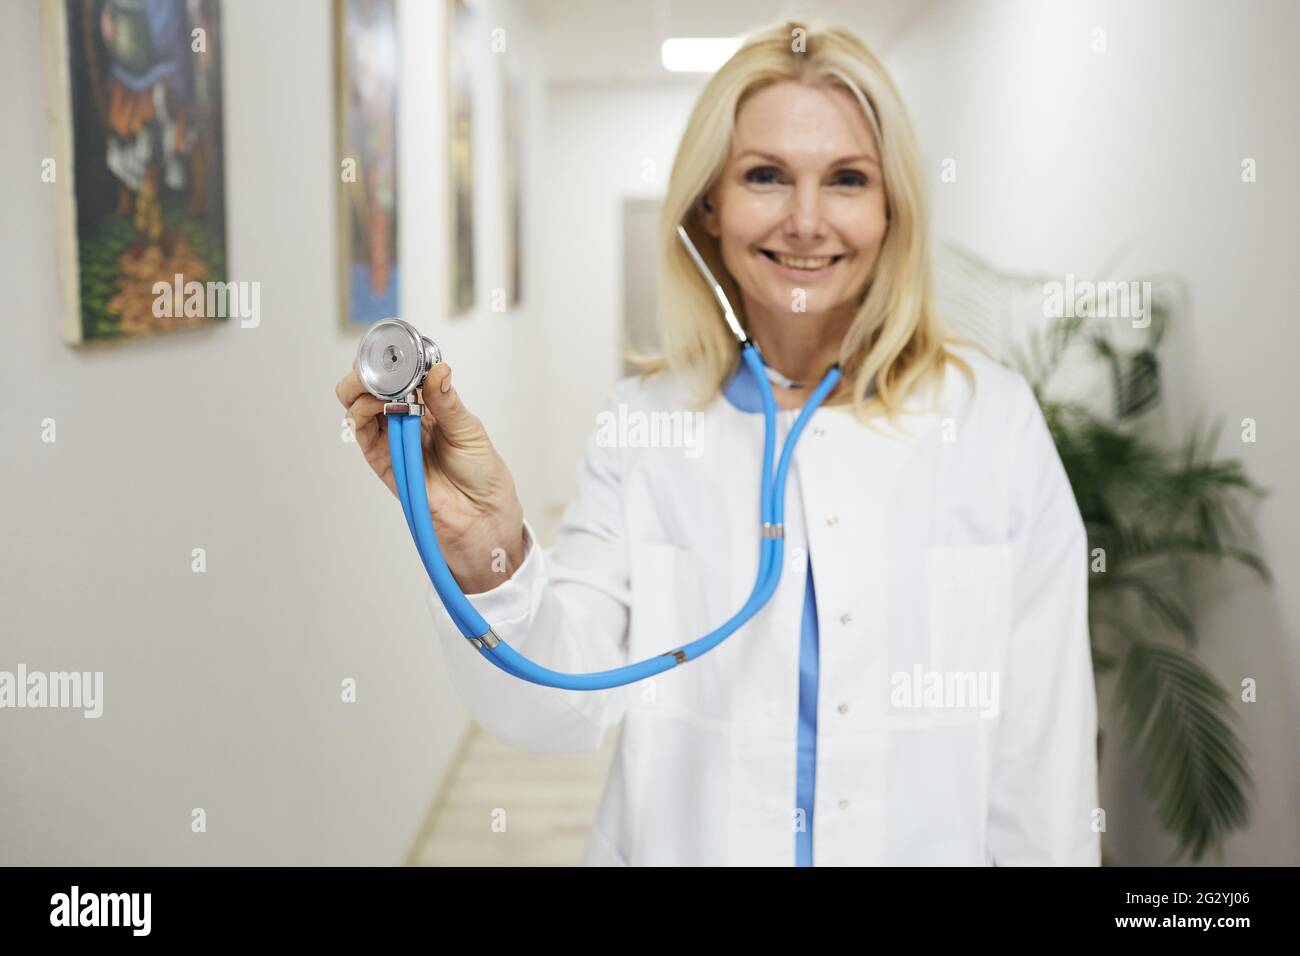 profession de médecin. Généraliste expérimentée portant un manteau médical avec stéthoscope à la main, debout dans une clinique médicale, portrait Banque D'Images